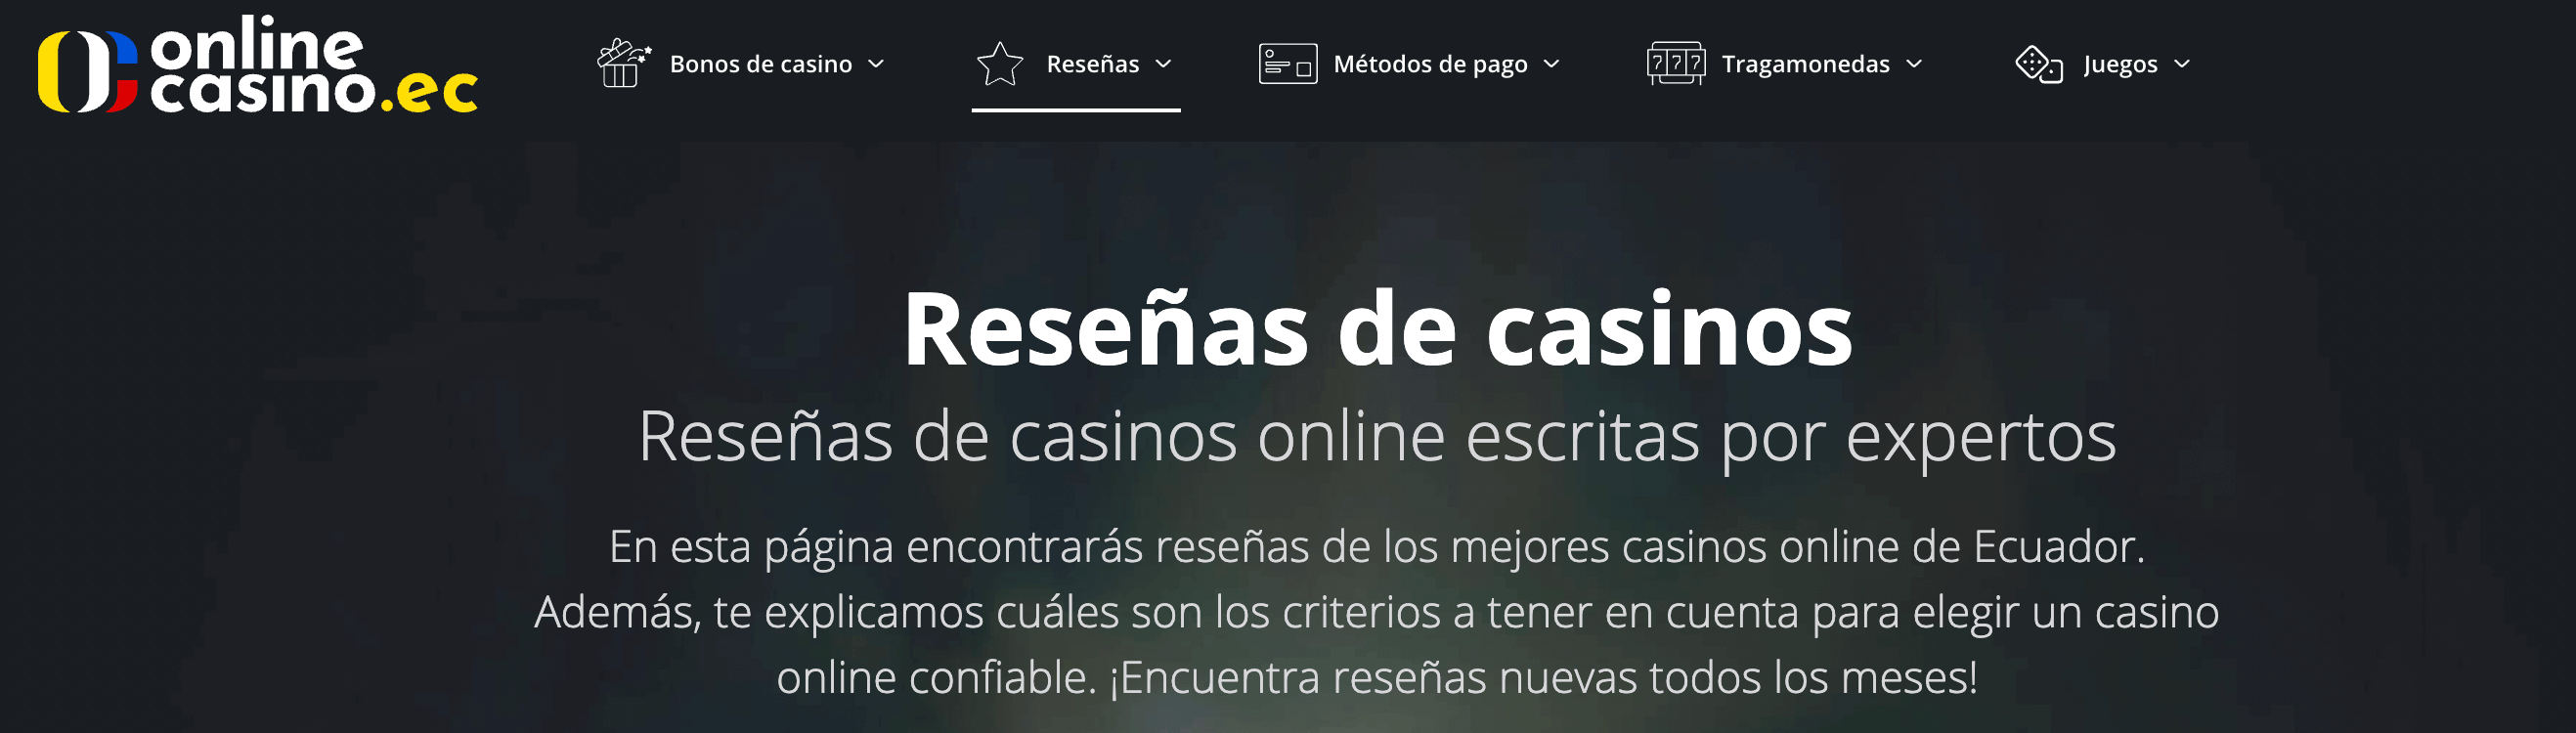 reseñas de casino en OnlineCasino.ec